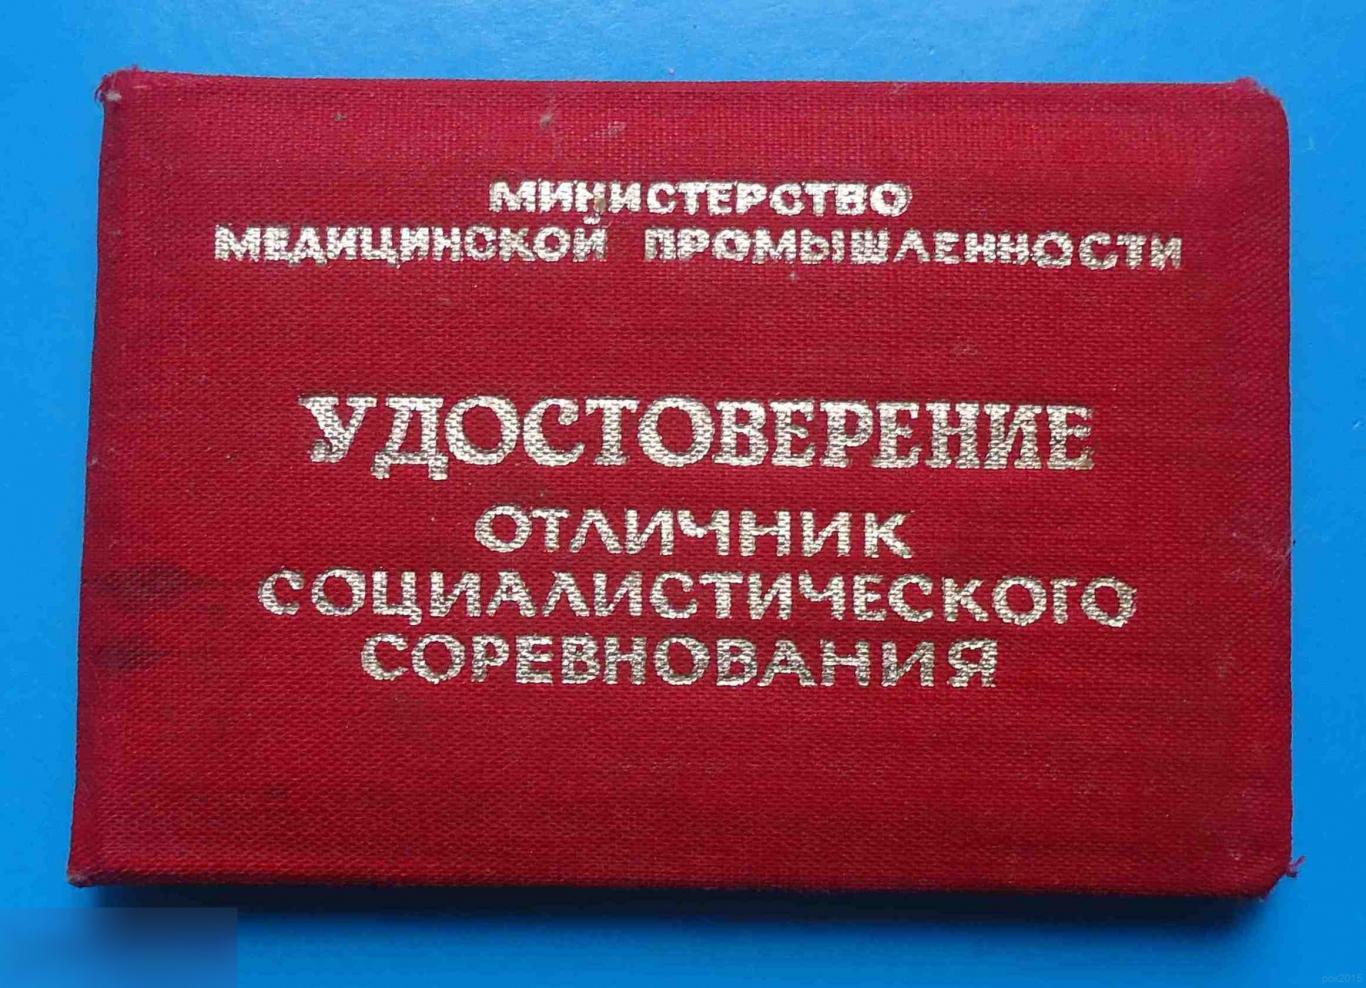 Удостоверение Отличник социалистического соревнования медицинской промышленности 1974 док